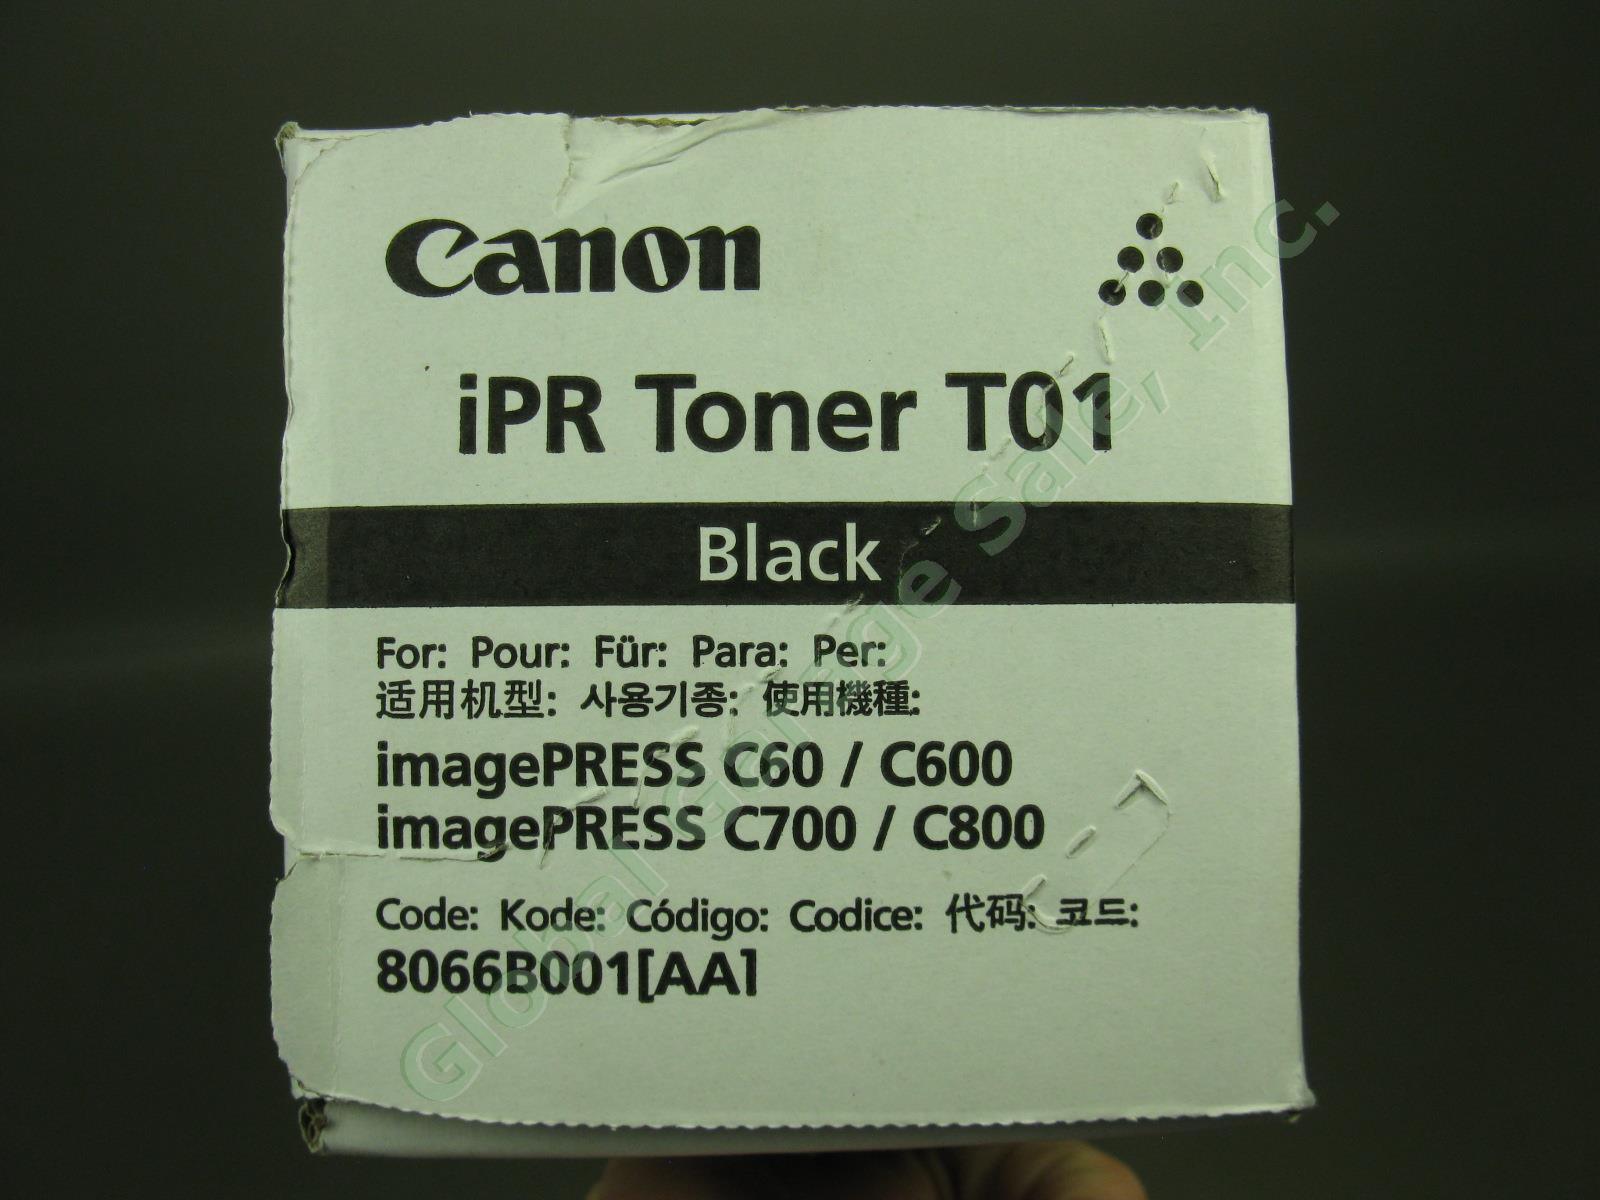 1 New Sealed Genuine Canon imagePRESS iPR Toner T01 Black For C60 C600 C700 C800 2